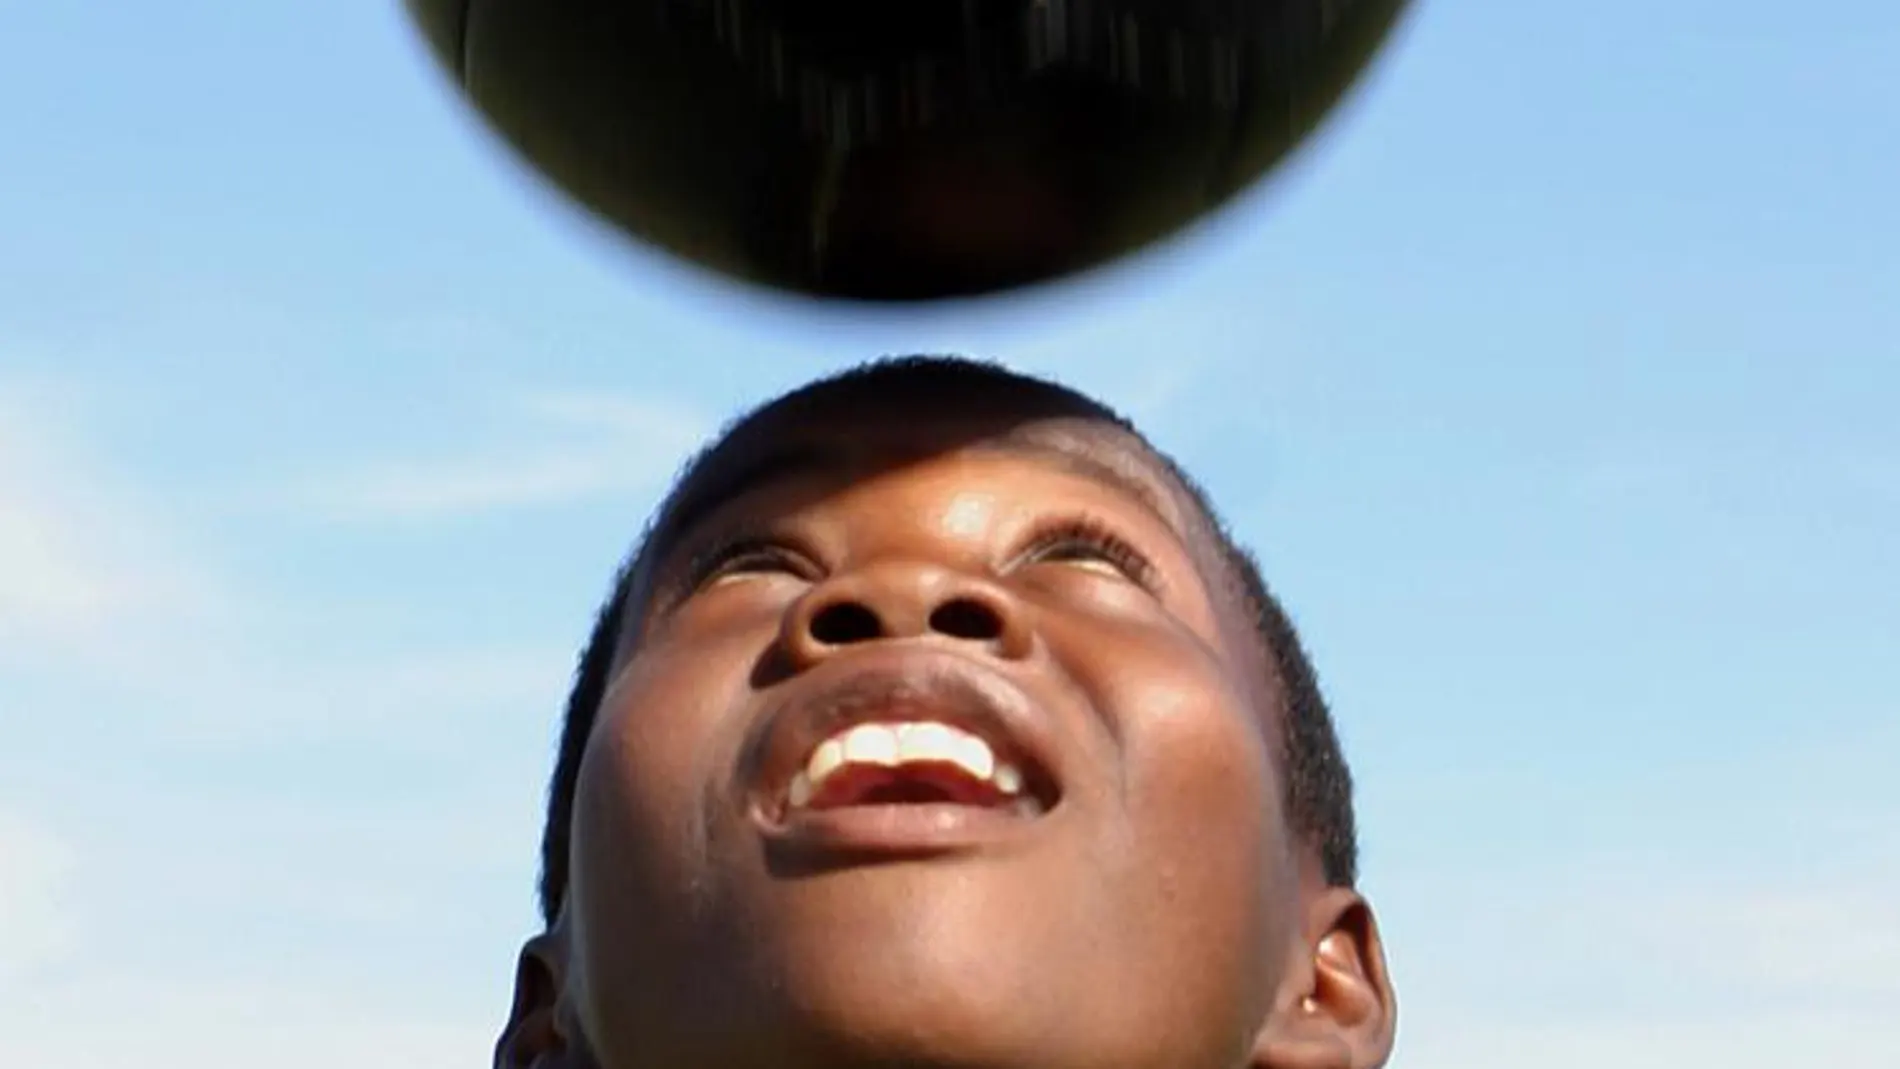 Un niño juega con un balón a dar remates de cabeza, en una imagen de archivo